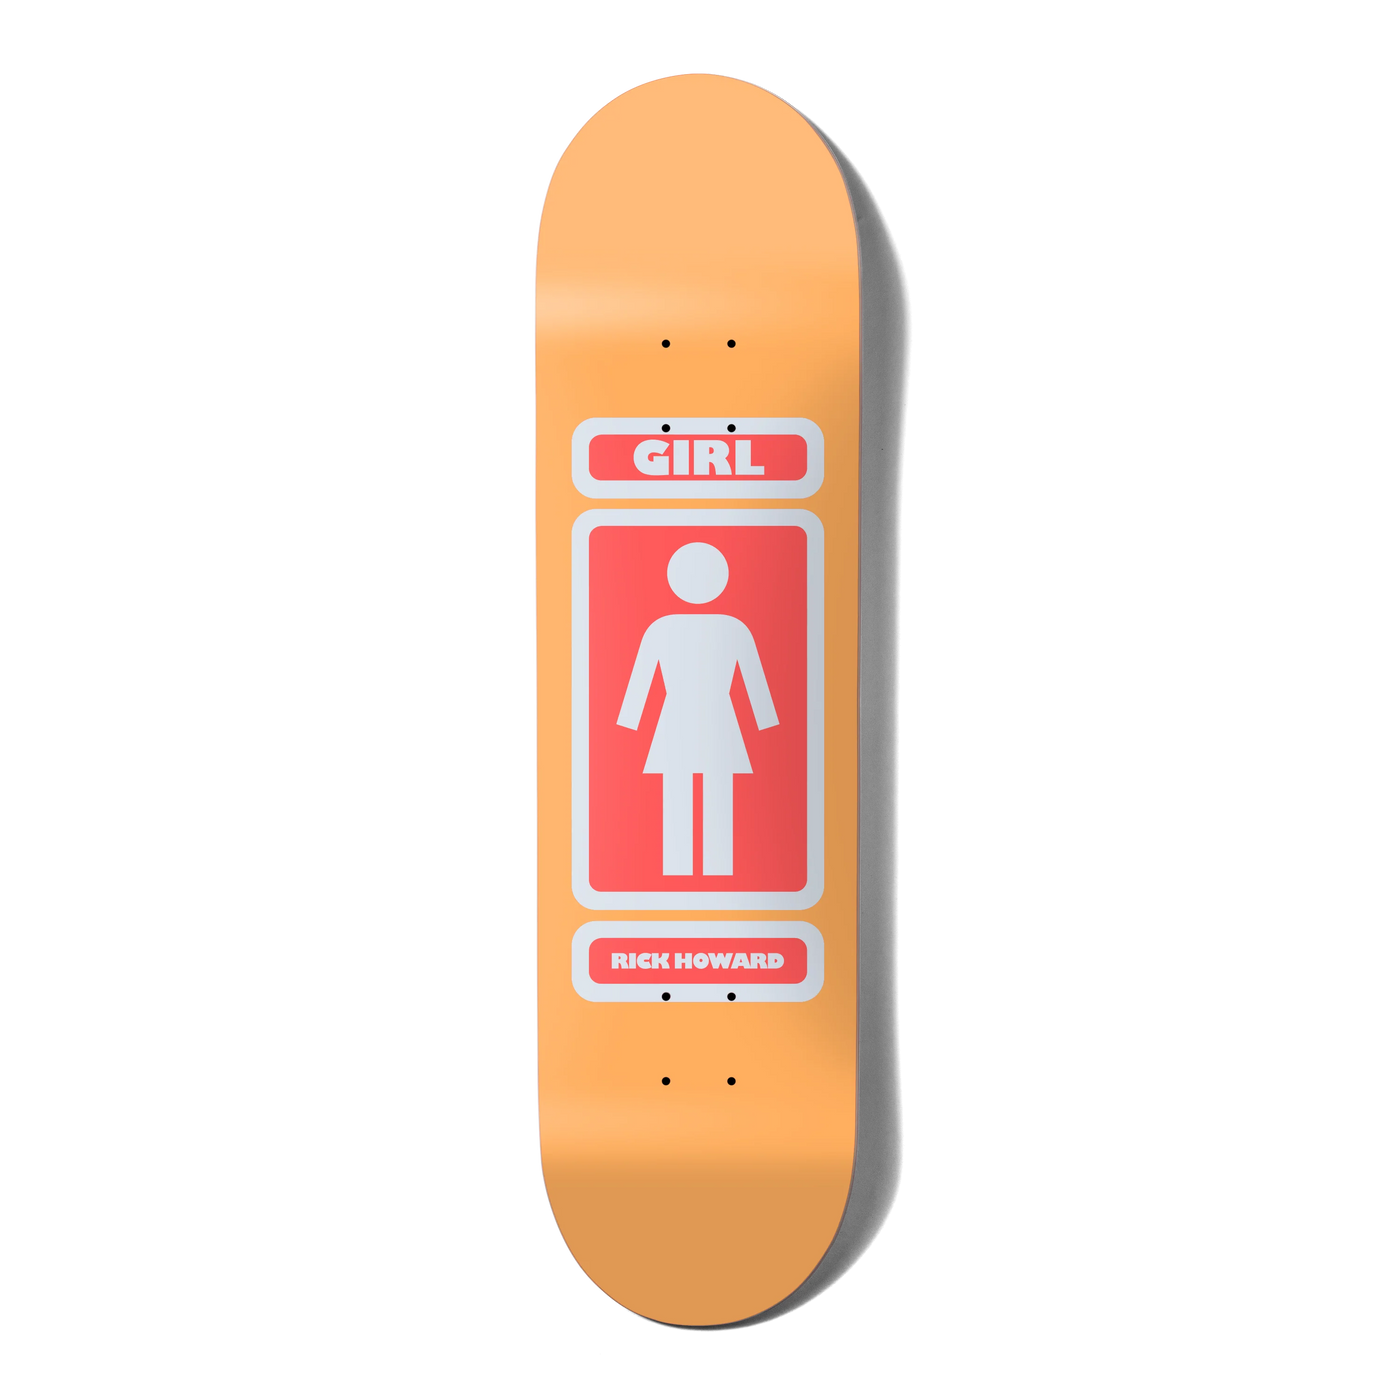 Girl Rick Howard 93 Til W45D1 Skateboard Deck - 8.5"